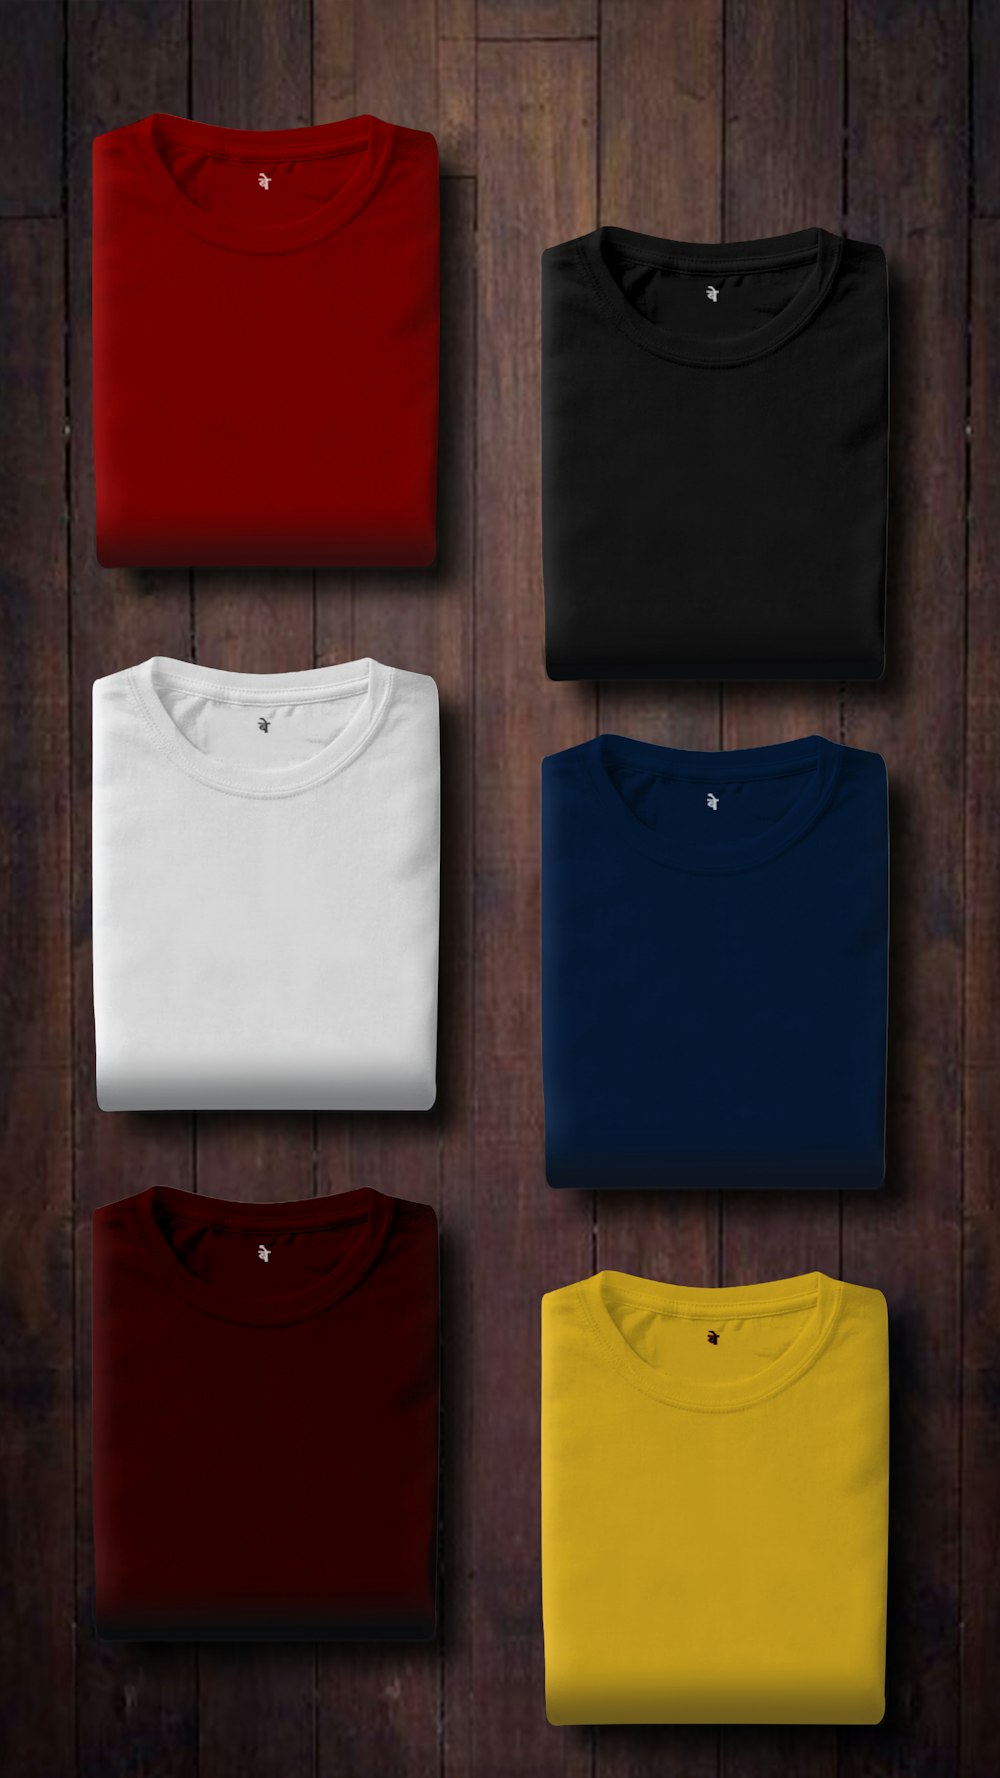 camisas dobradas coloridas variadas no painel de madeira